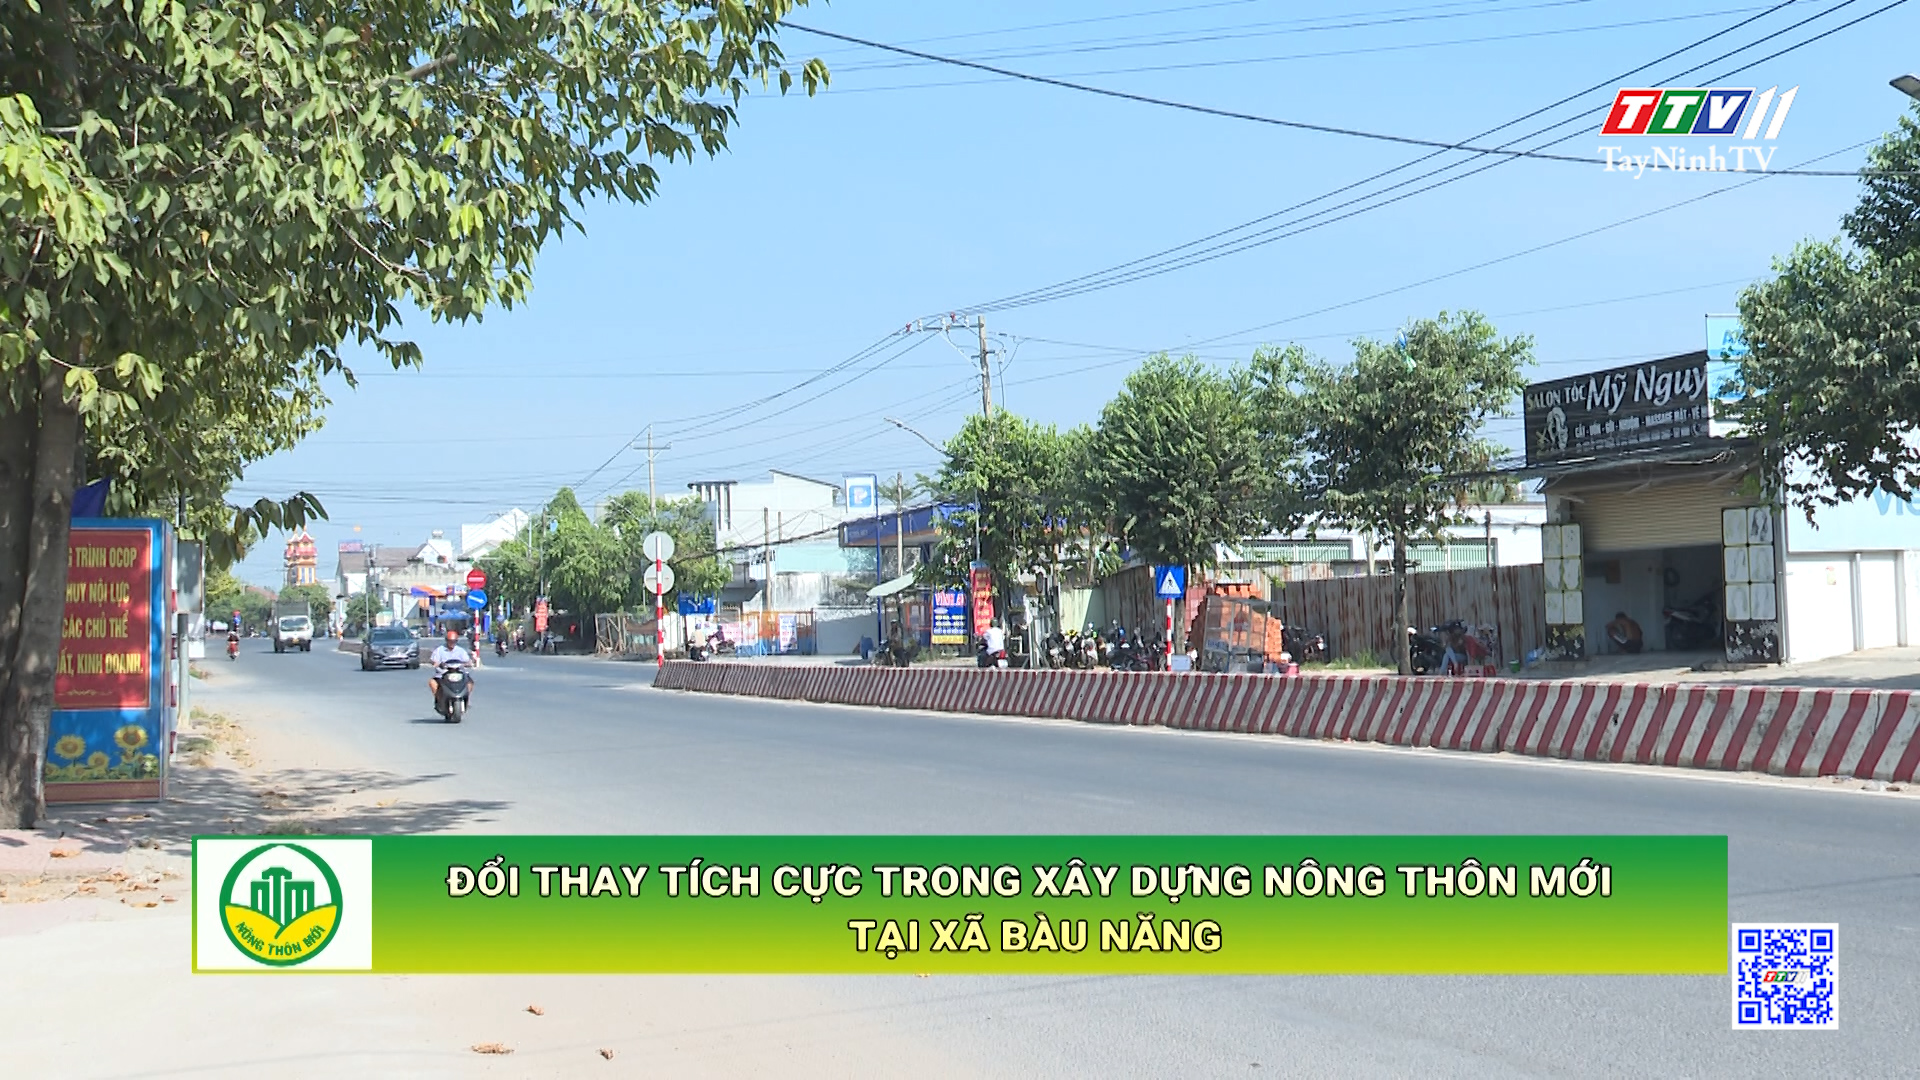 Đổi thay tích cực trong xây dựng nông thôn mới tại xã Bàu Năng | TÂY NINH XÂY DỰNG NÔNG THÔN MỚI | TayNinhTV